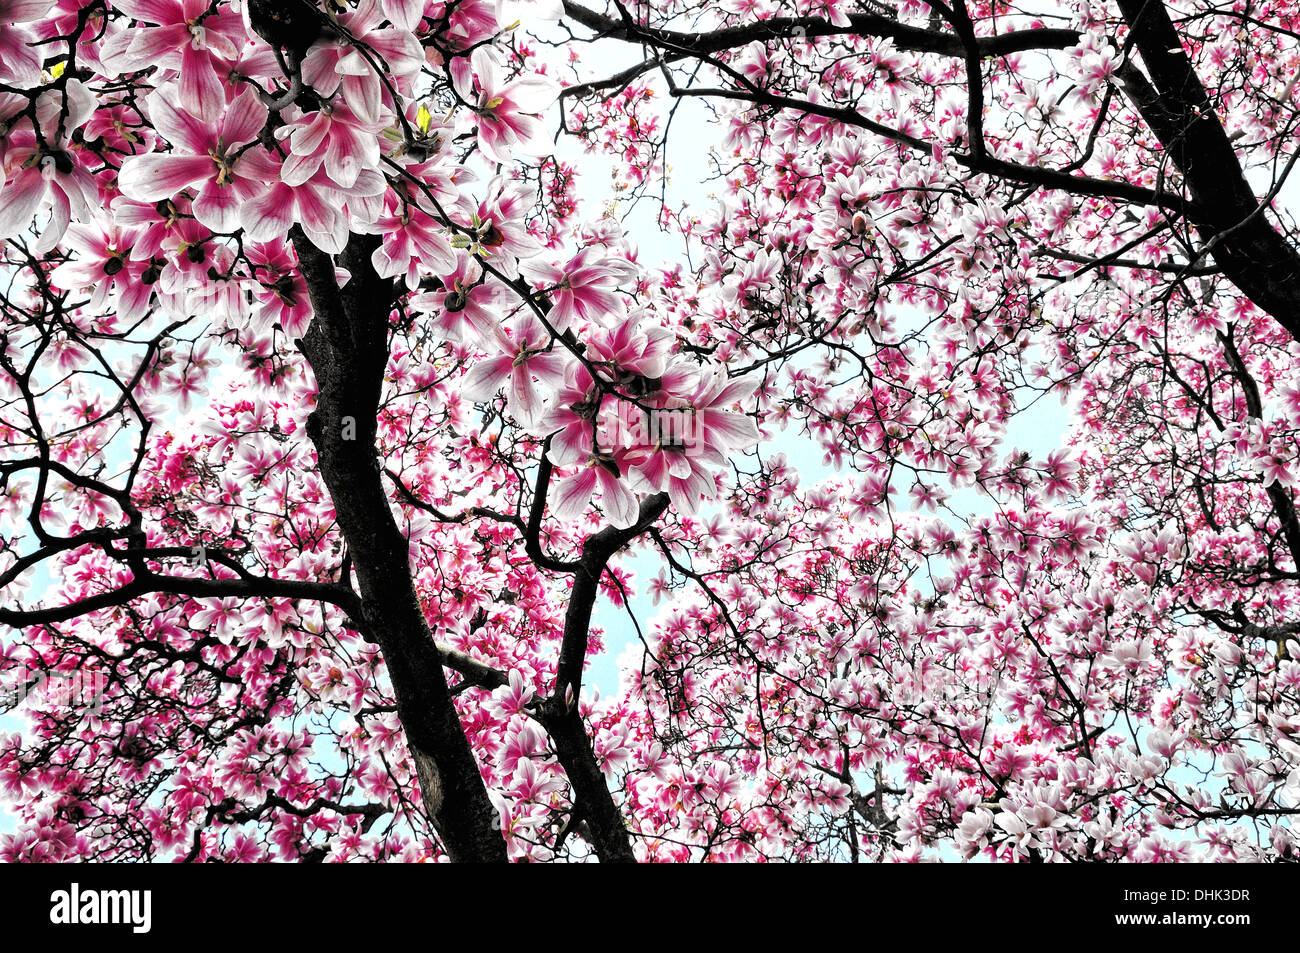 Dream of magnolia blossoms Stock Photo